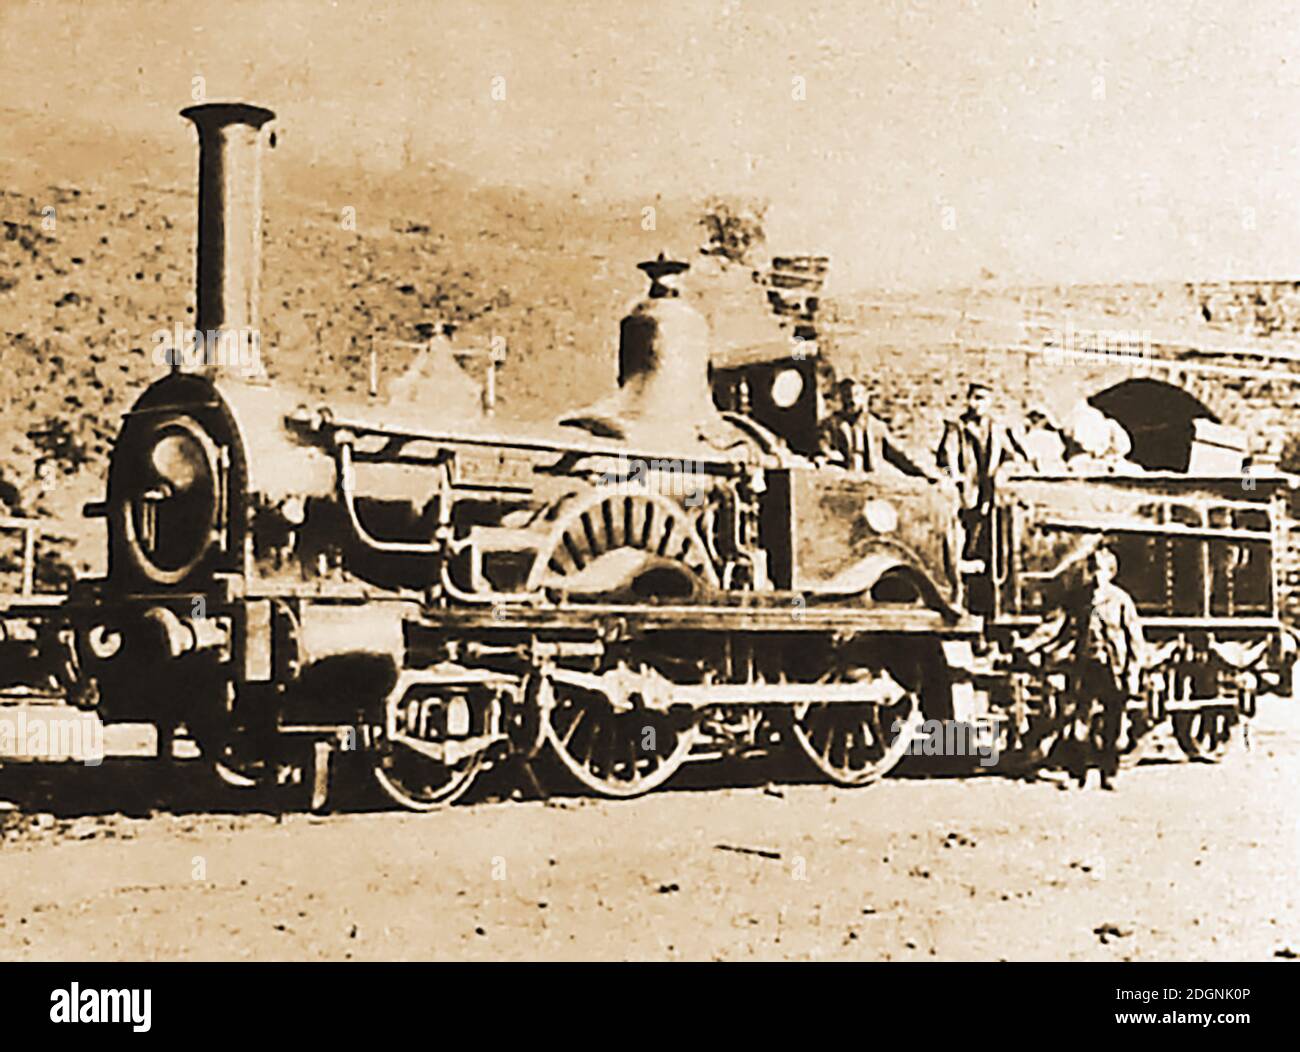 Eine seltene alte Momentaufnahme der Dampfeisenbahnlokomotive 'Sybil', die speziell für die L.S.W.R. gebaut wurde (London und South Western Railway) im Jahr 1868. Stockfoto